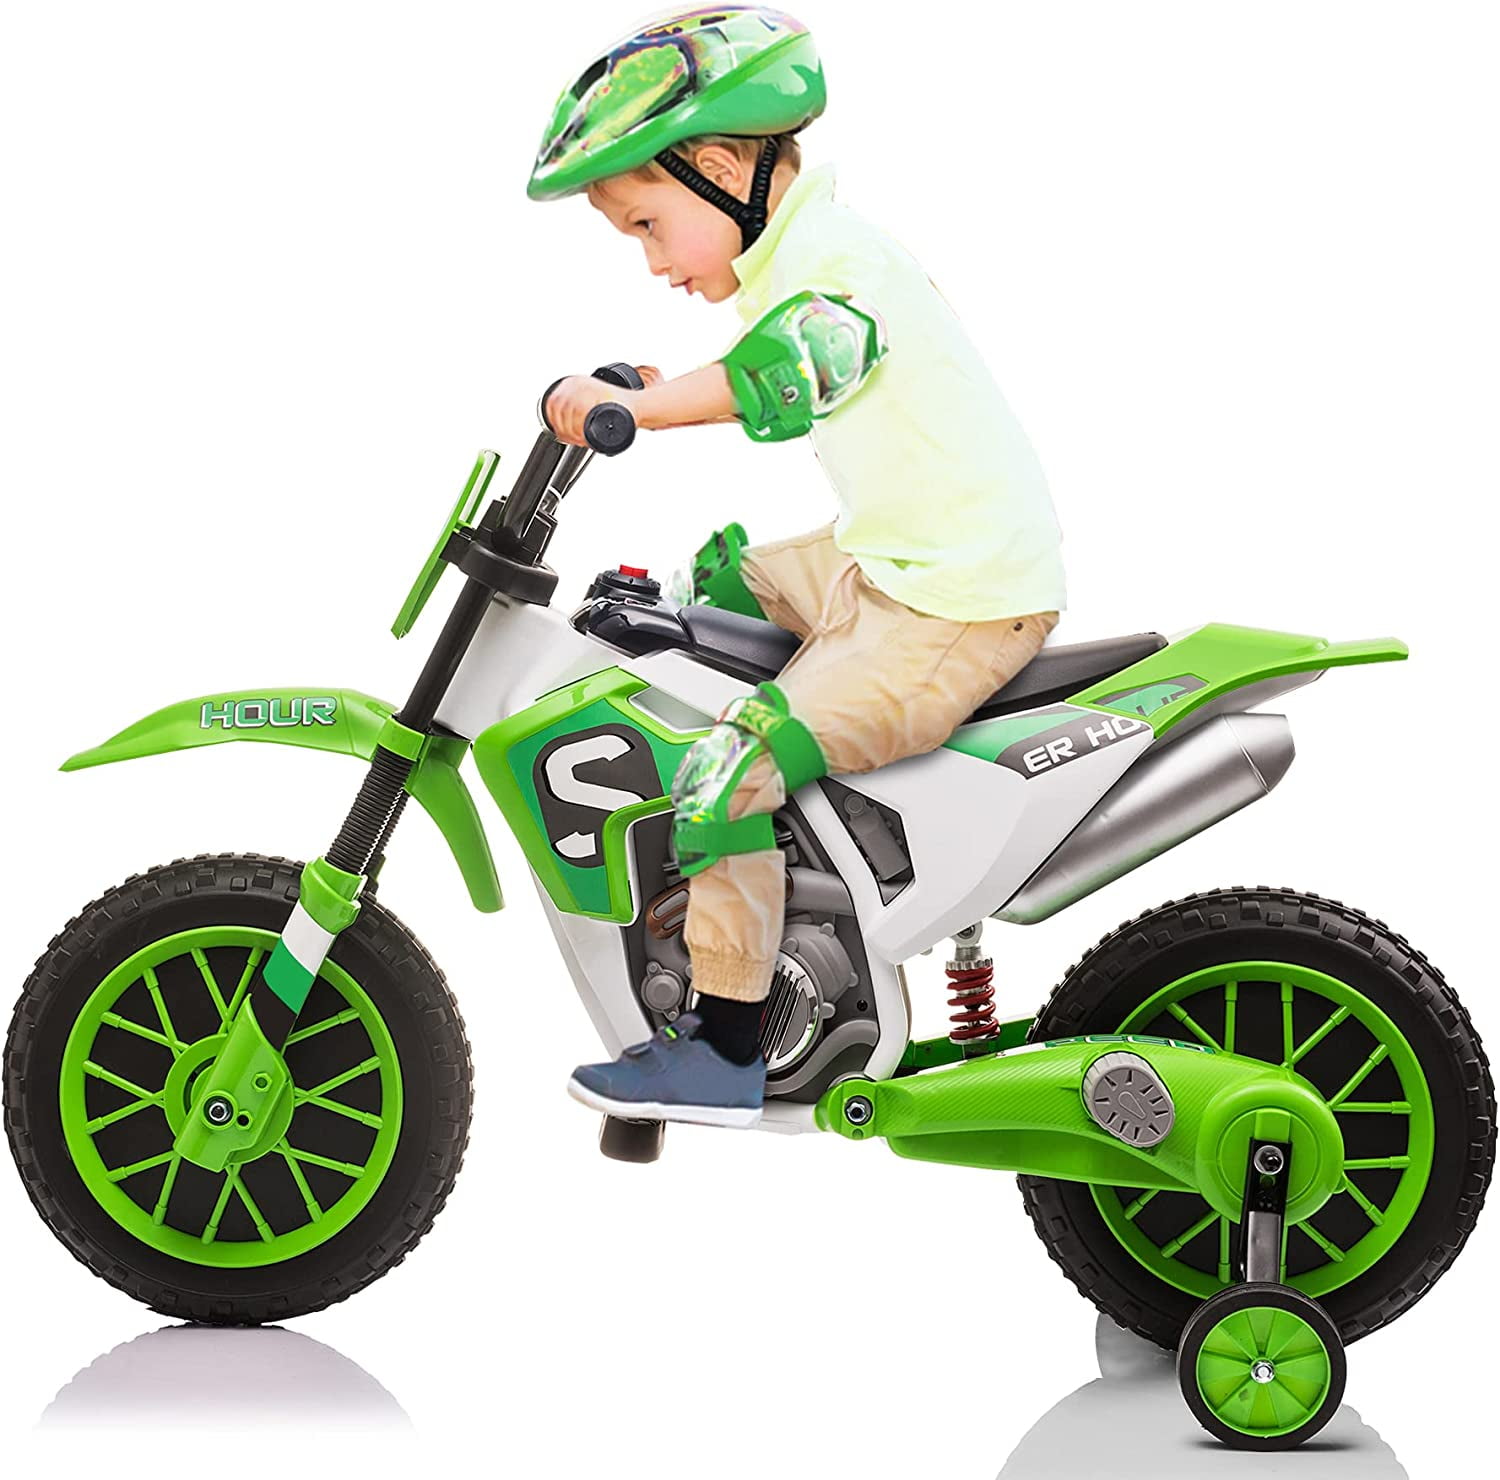 Moto Modèle Jouet Pour Enfants Bébé Enfants Enfants Jouets Cadeaux